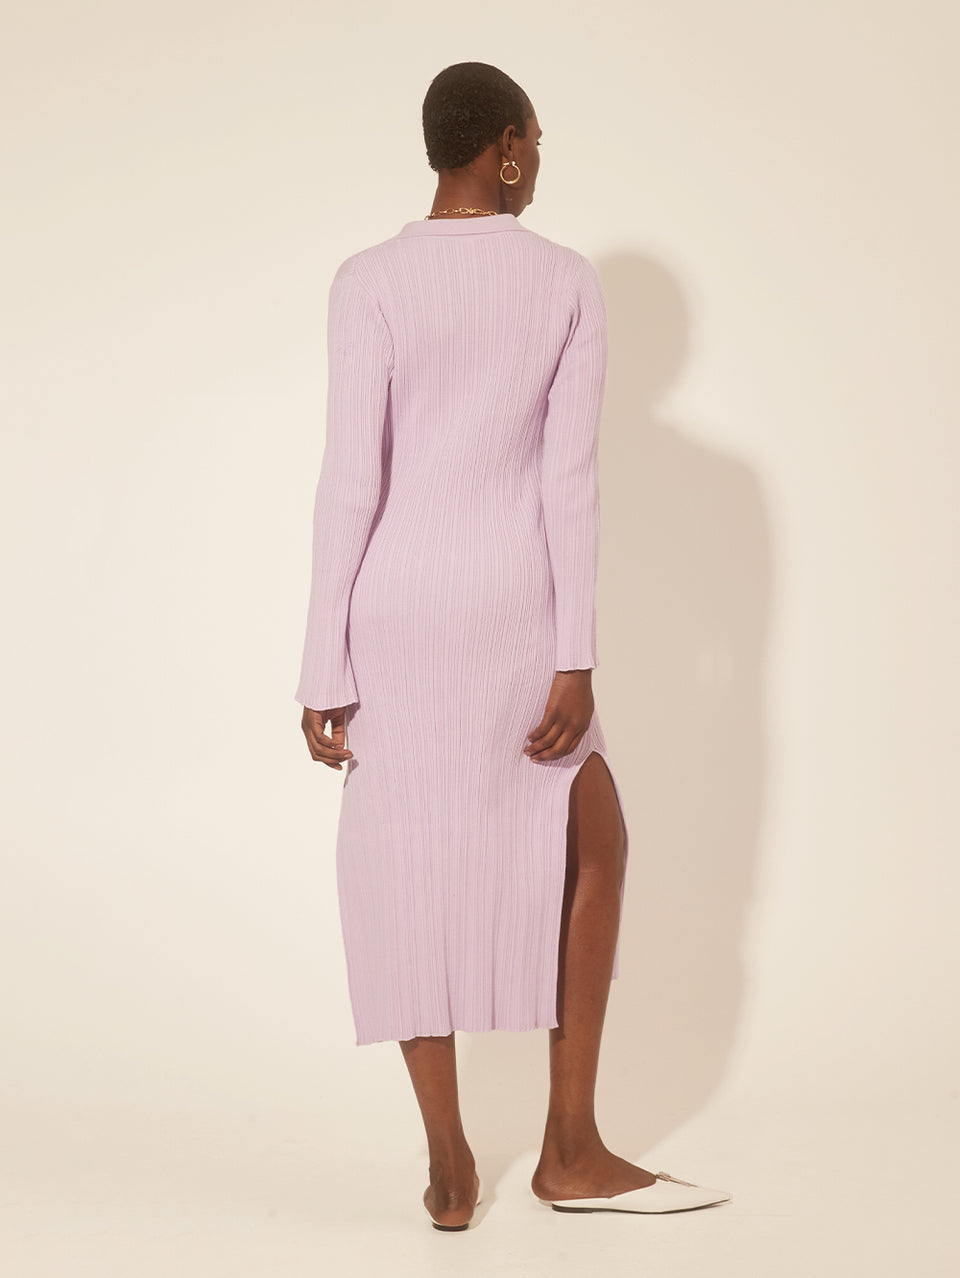 Alana Knit Dress Lilac KIVARI | Model wears a lilac knit midi dress, back view